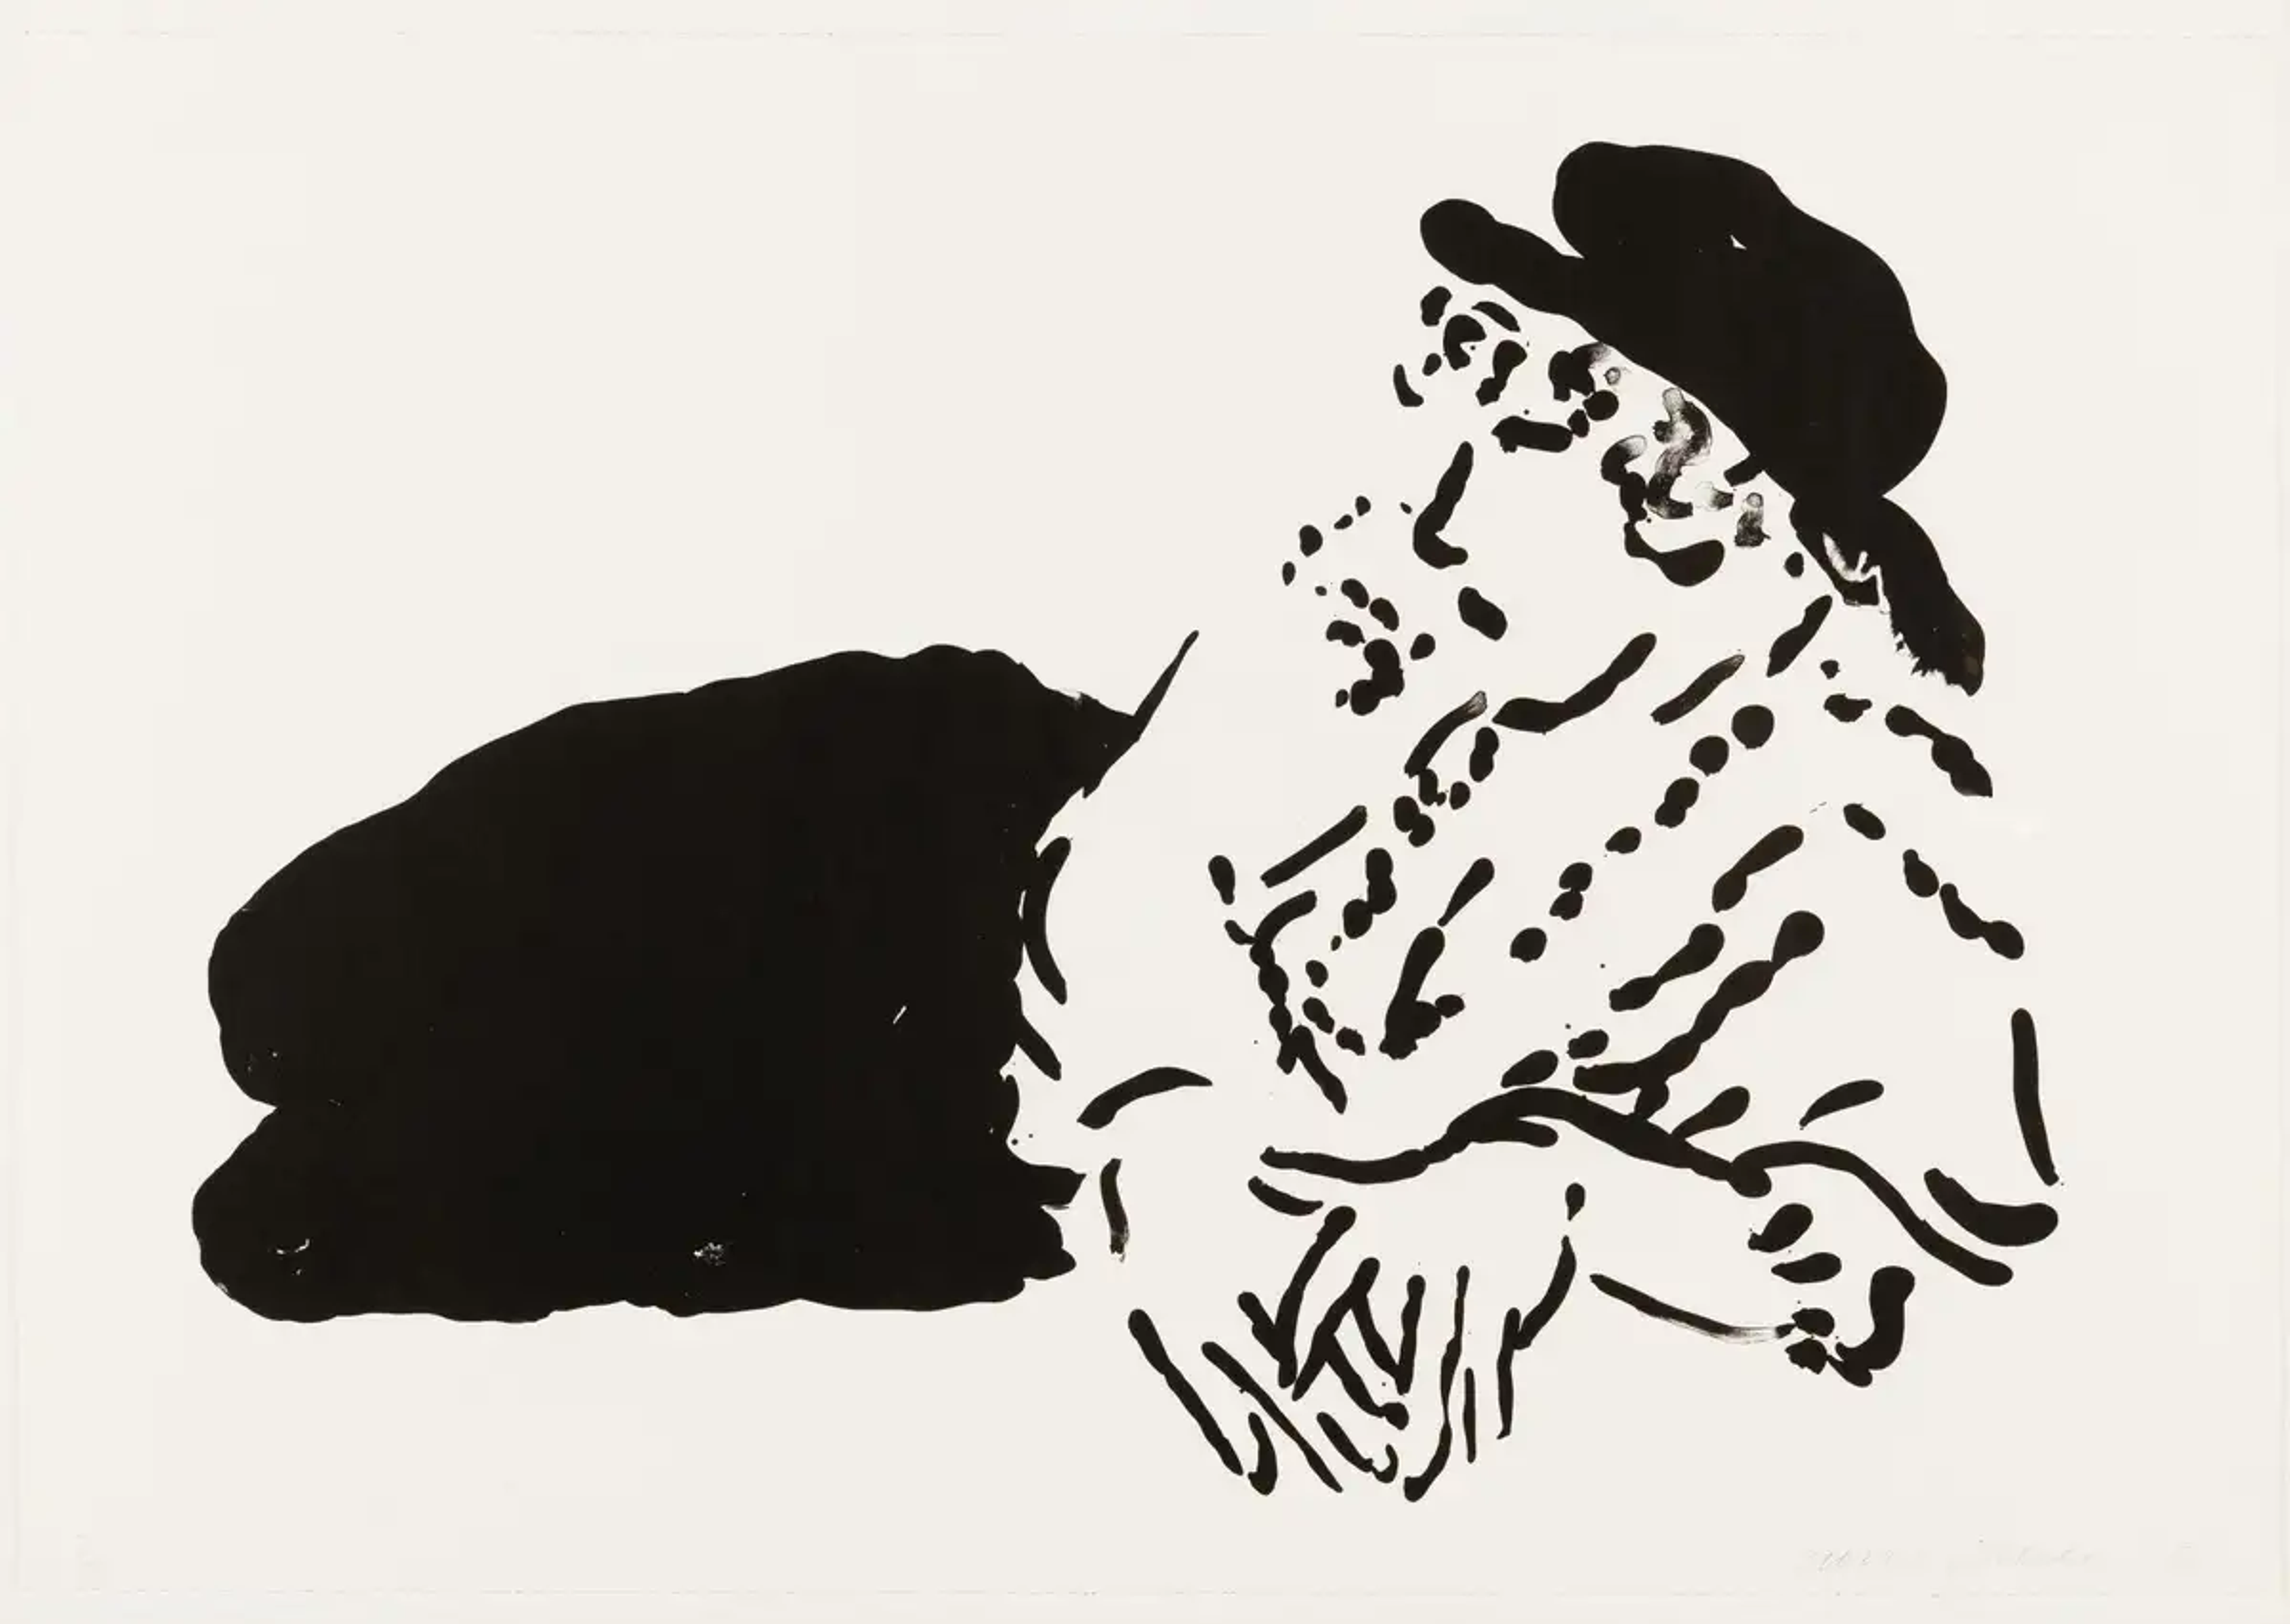 Celia Birtwell: David Hockney's Ultimate Muse